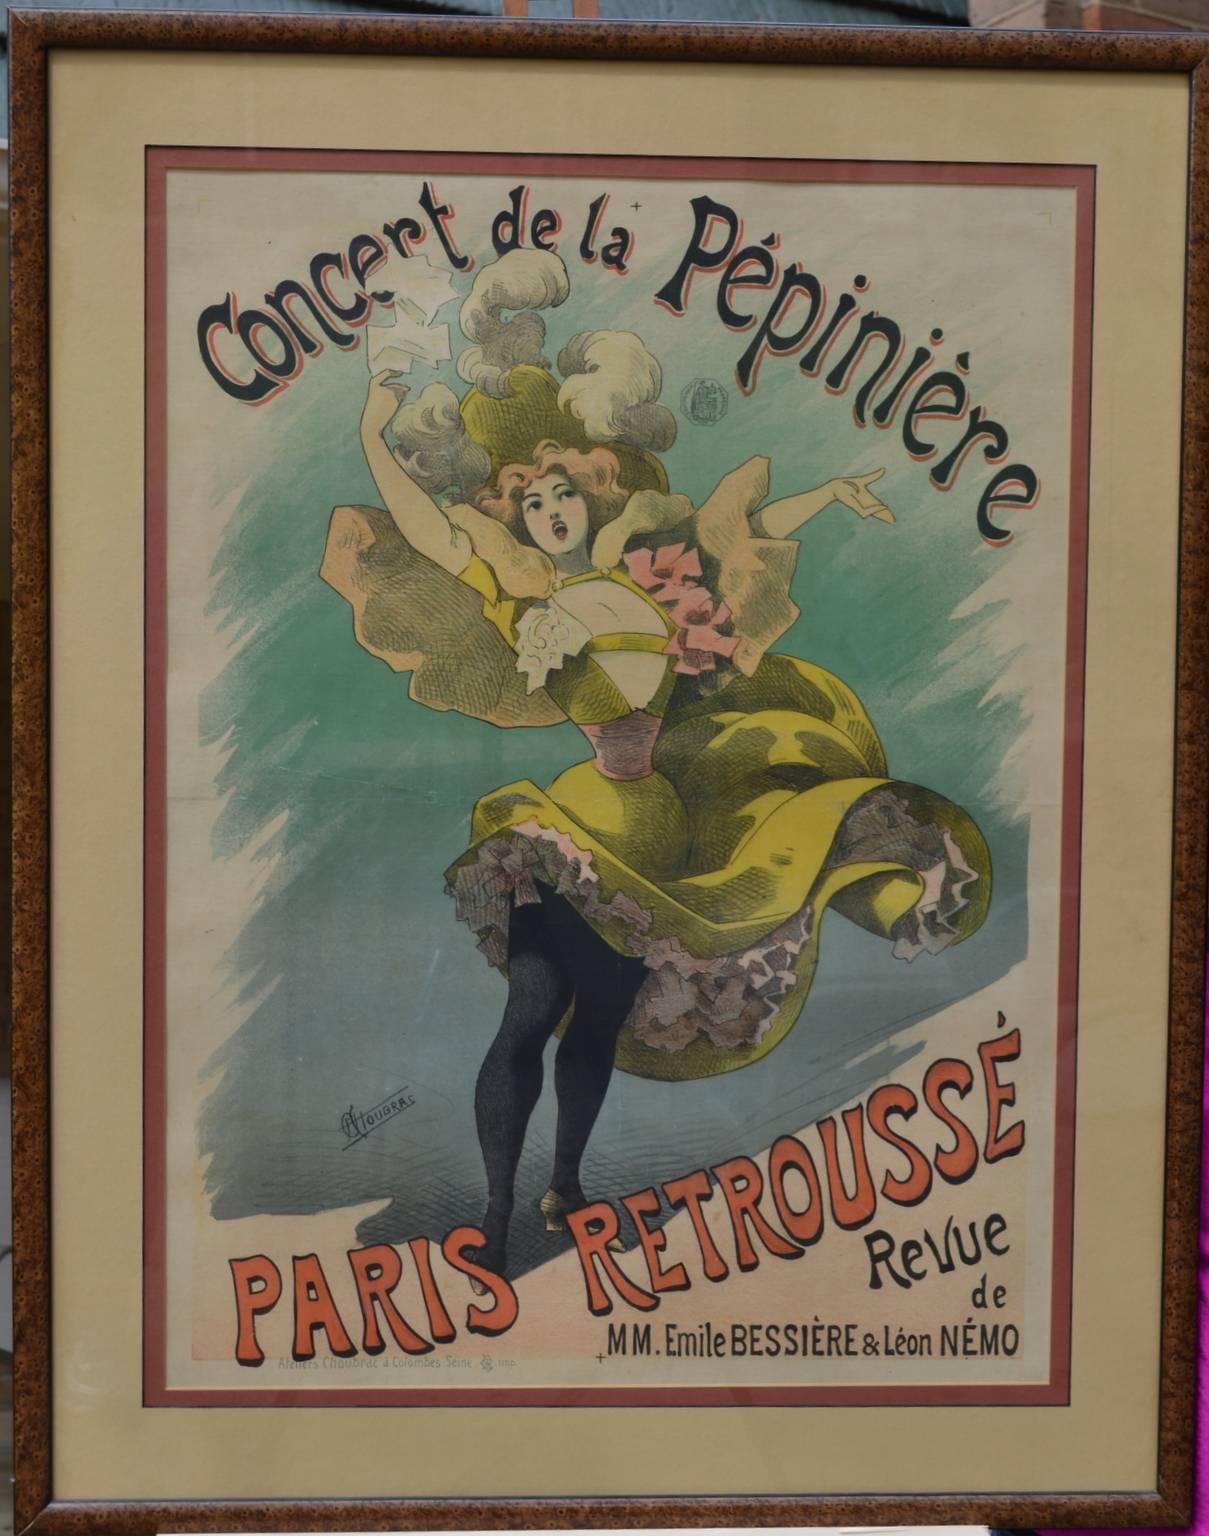 CONCERT DE LA PÉPINIÈRE / PARIS RETROUSSÉ.   Original Art Nouveau Poster - Brown Figurative Print by Alfred Choubrac